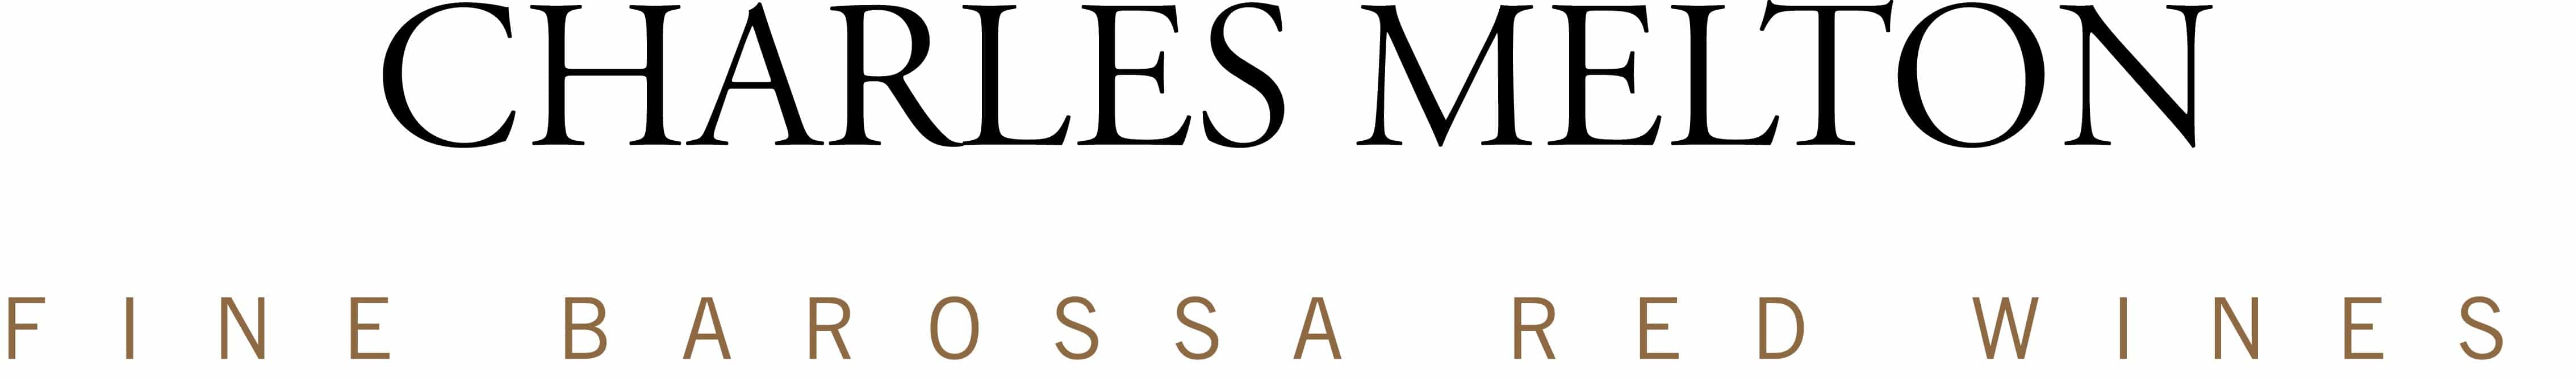 Charles Melton Wines logo